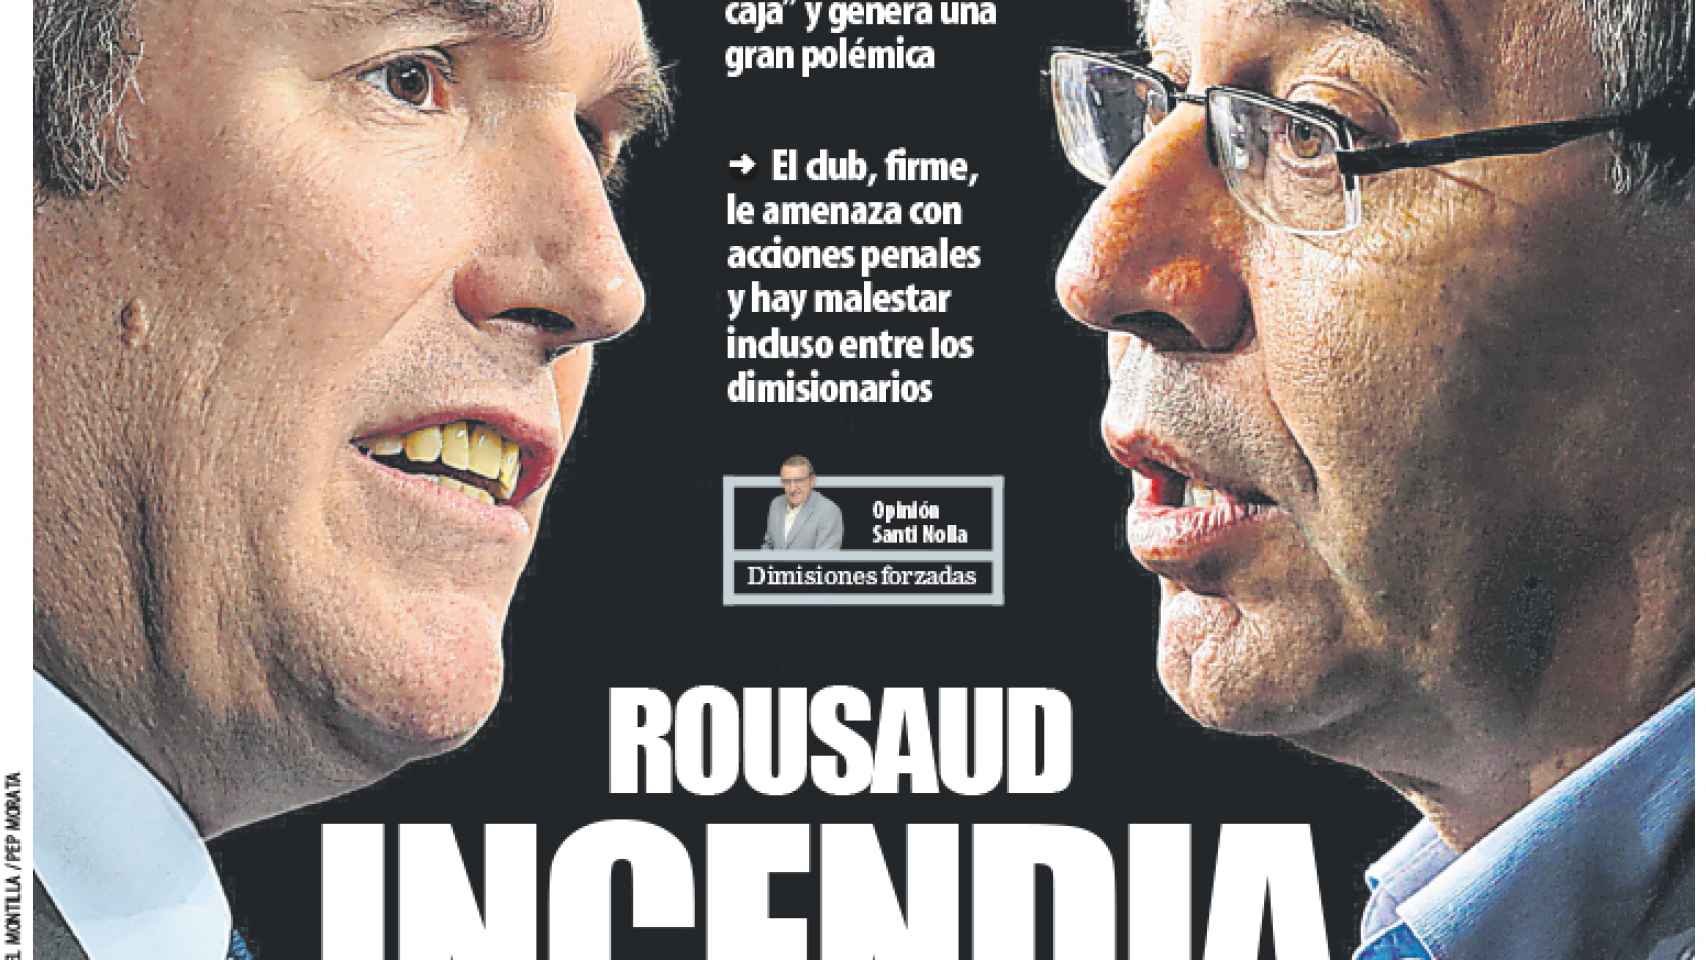 La portada del diario Mundo Deportivo (11/04/2020)